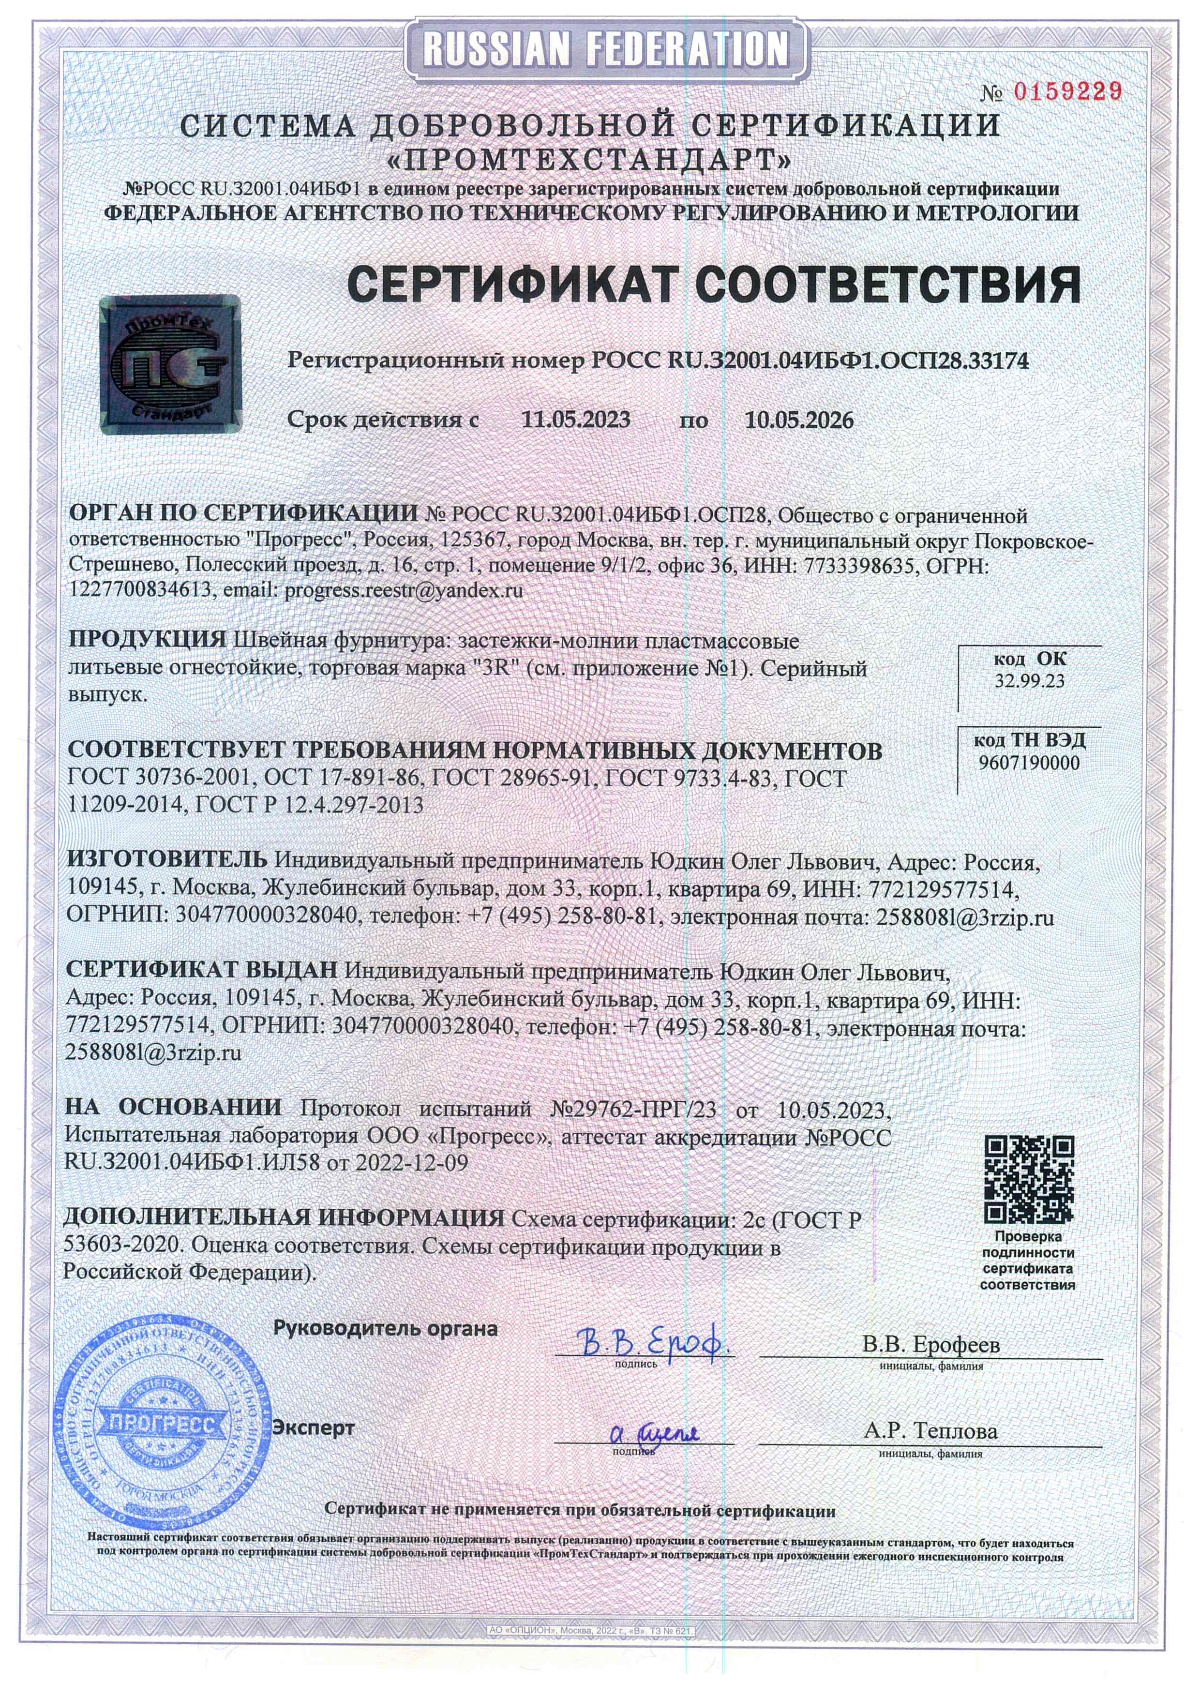 Сертификат соответствия Застёжки молнии пластиковые огнестойкие